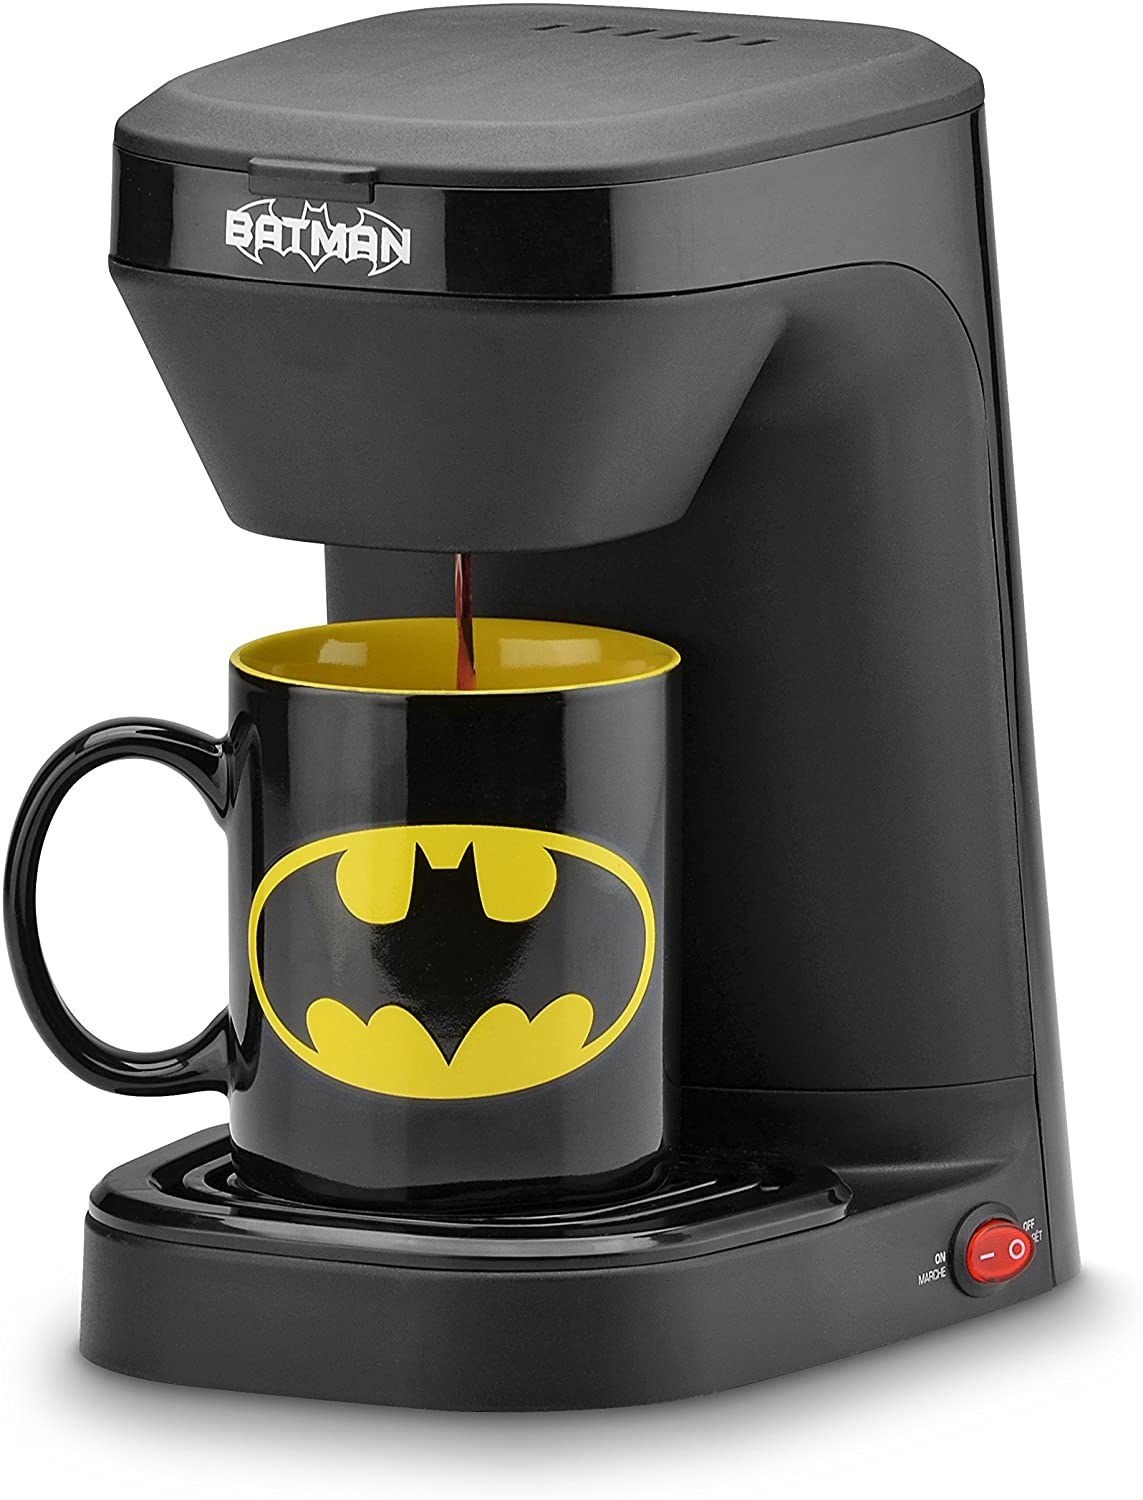 Cafetera eléctrica Batman